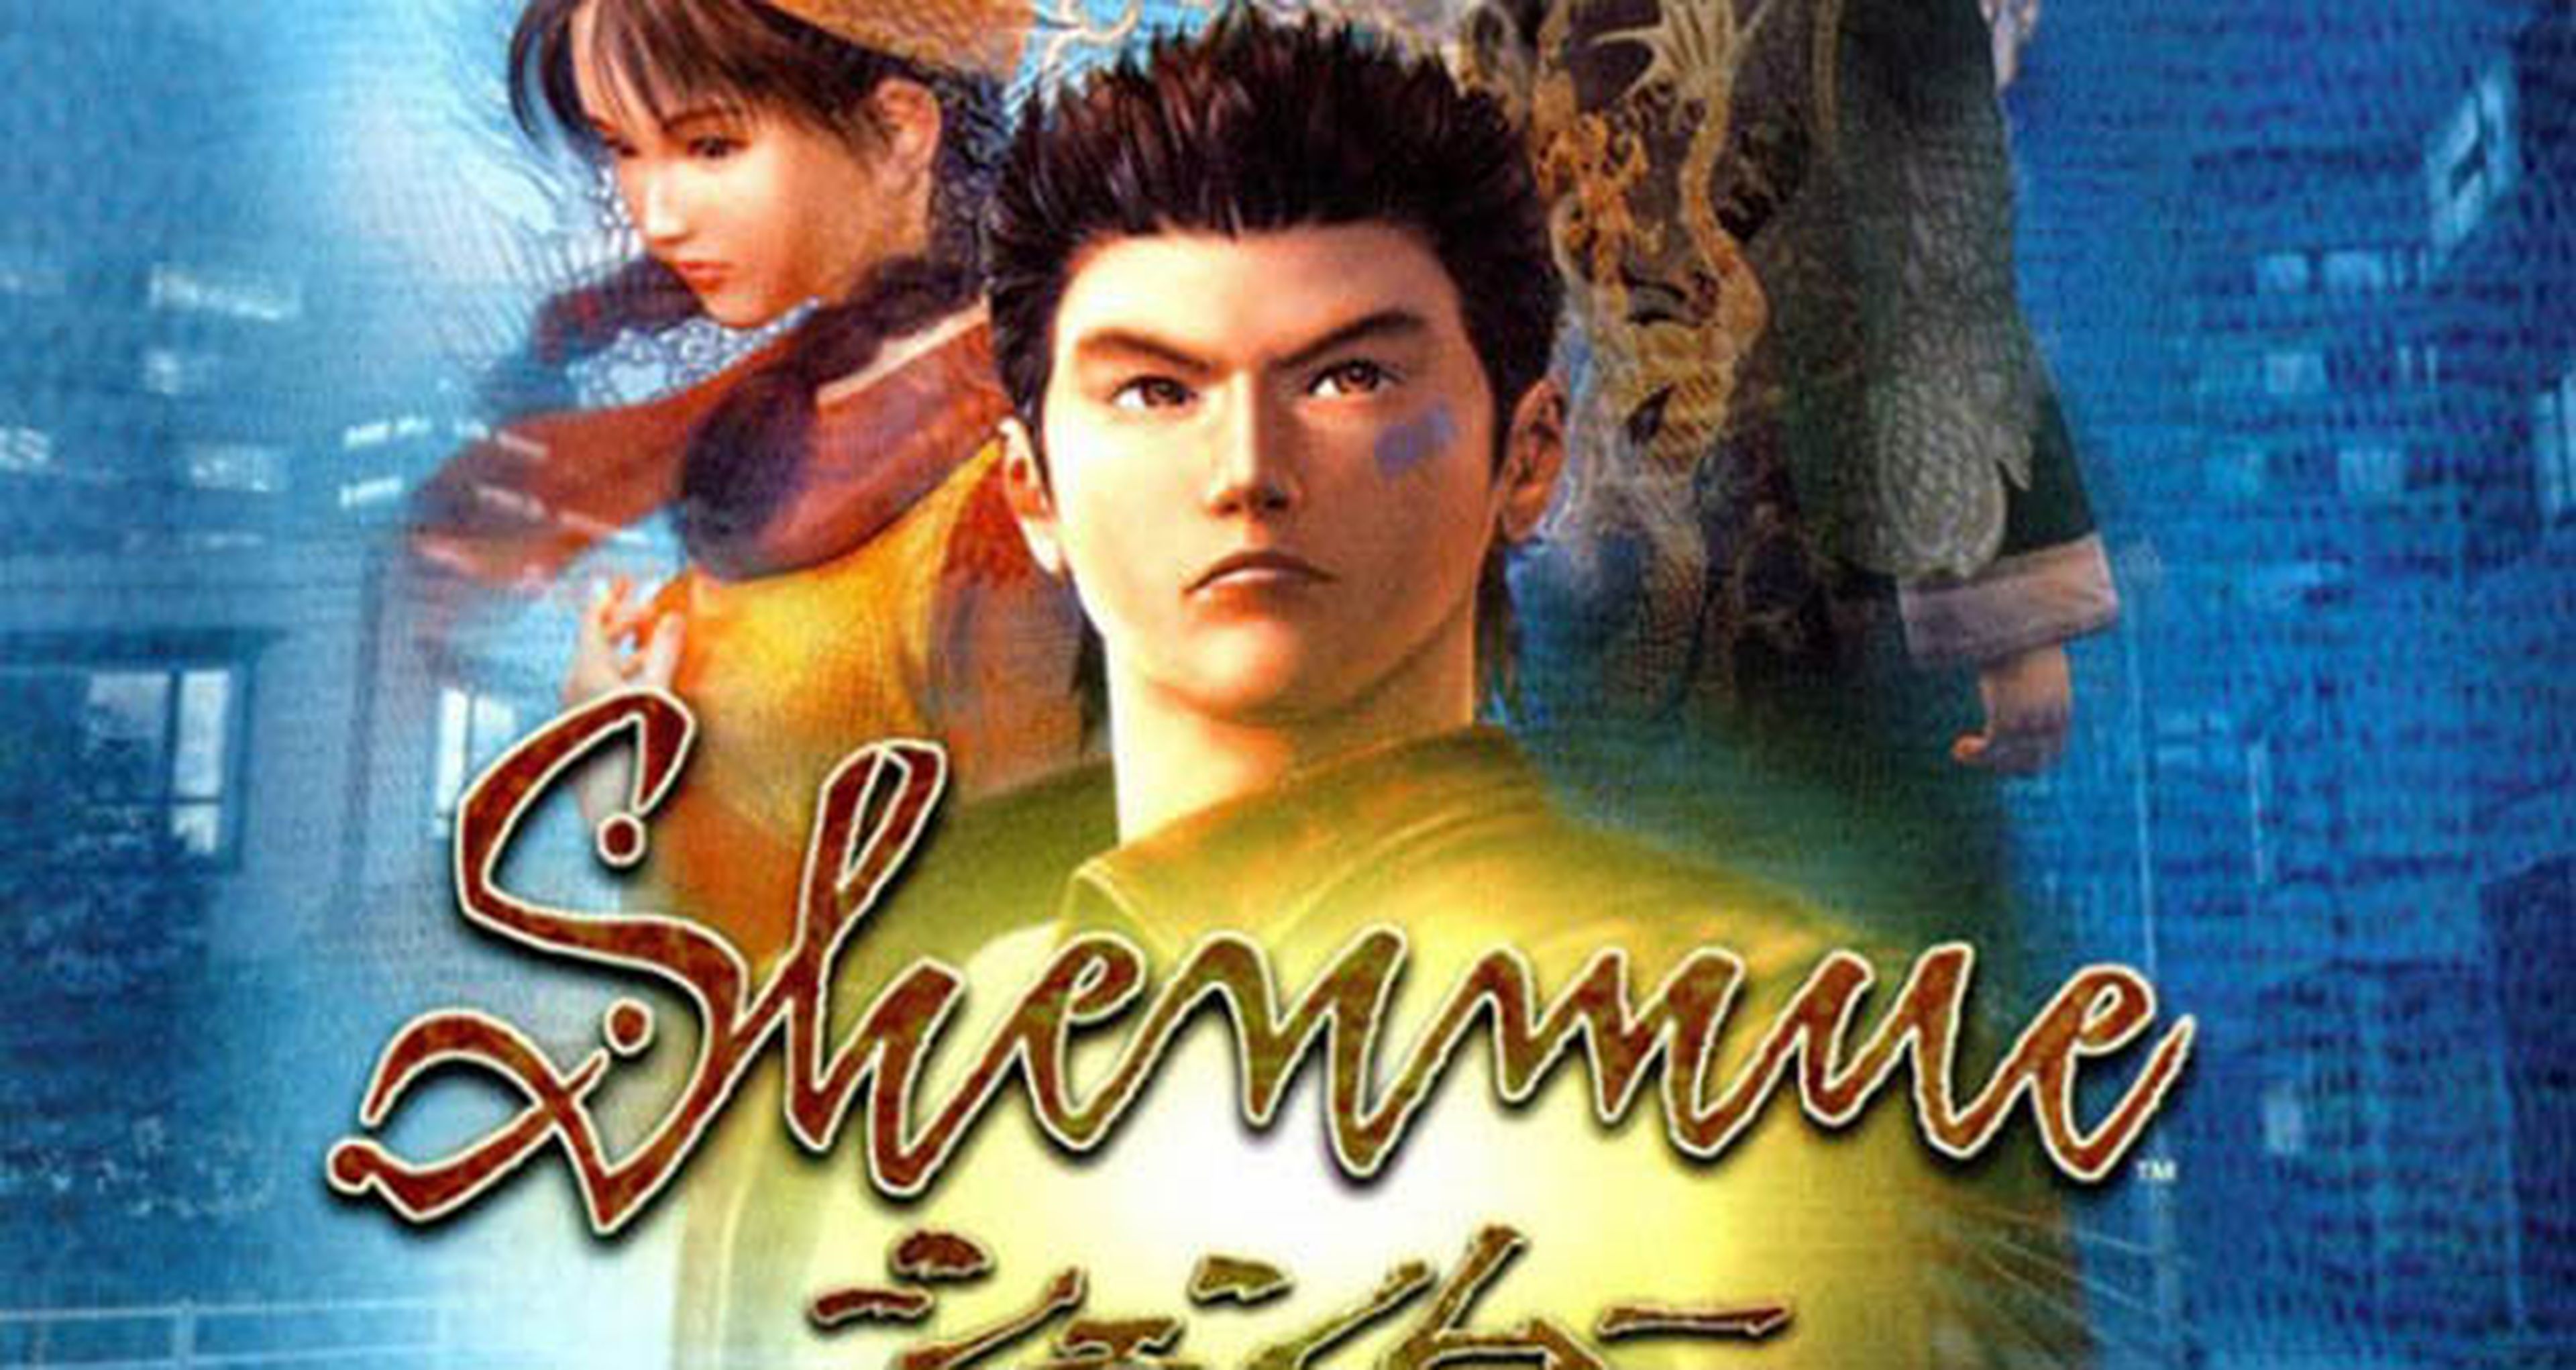 El creador de Shenmue HD se une al equipo de Shenmue 3